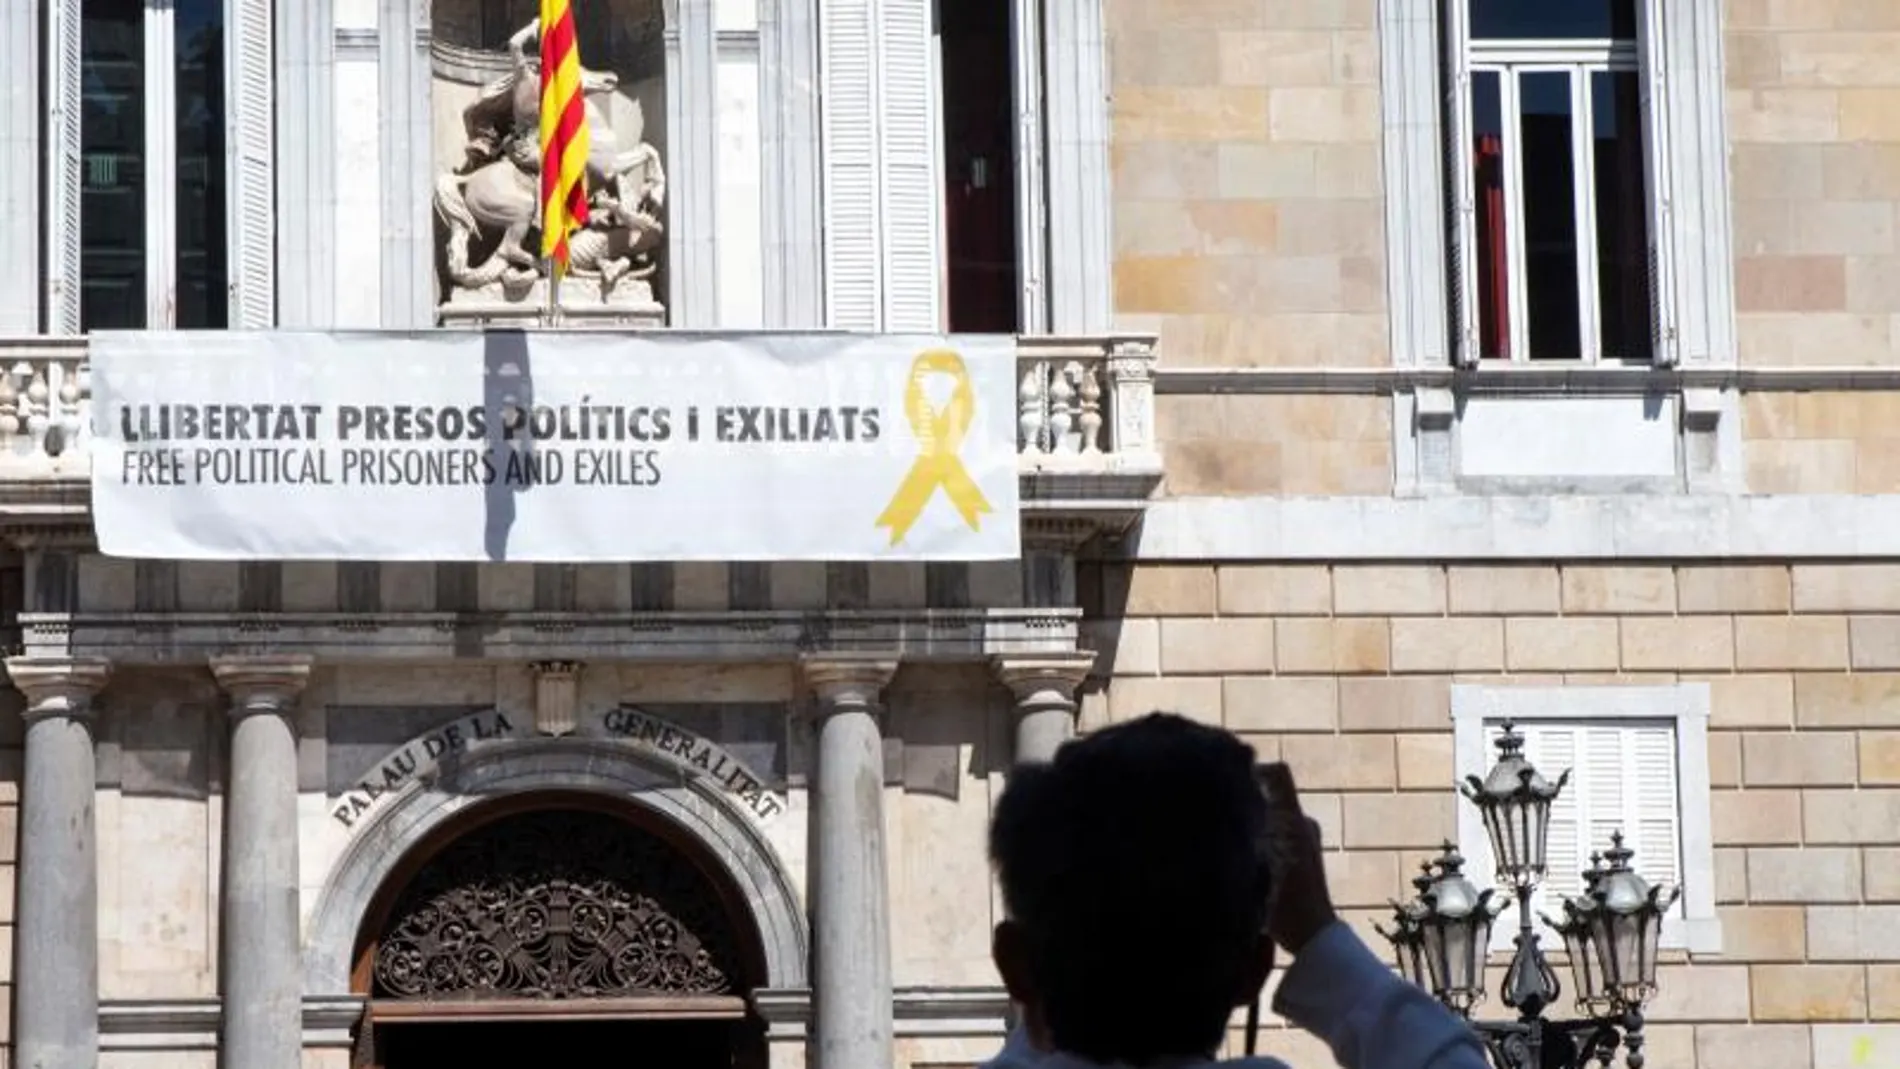 Imagen del balcón del Palau de la Generalitat con la pancarta